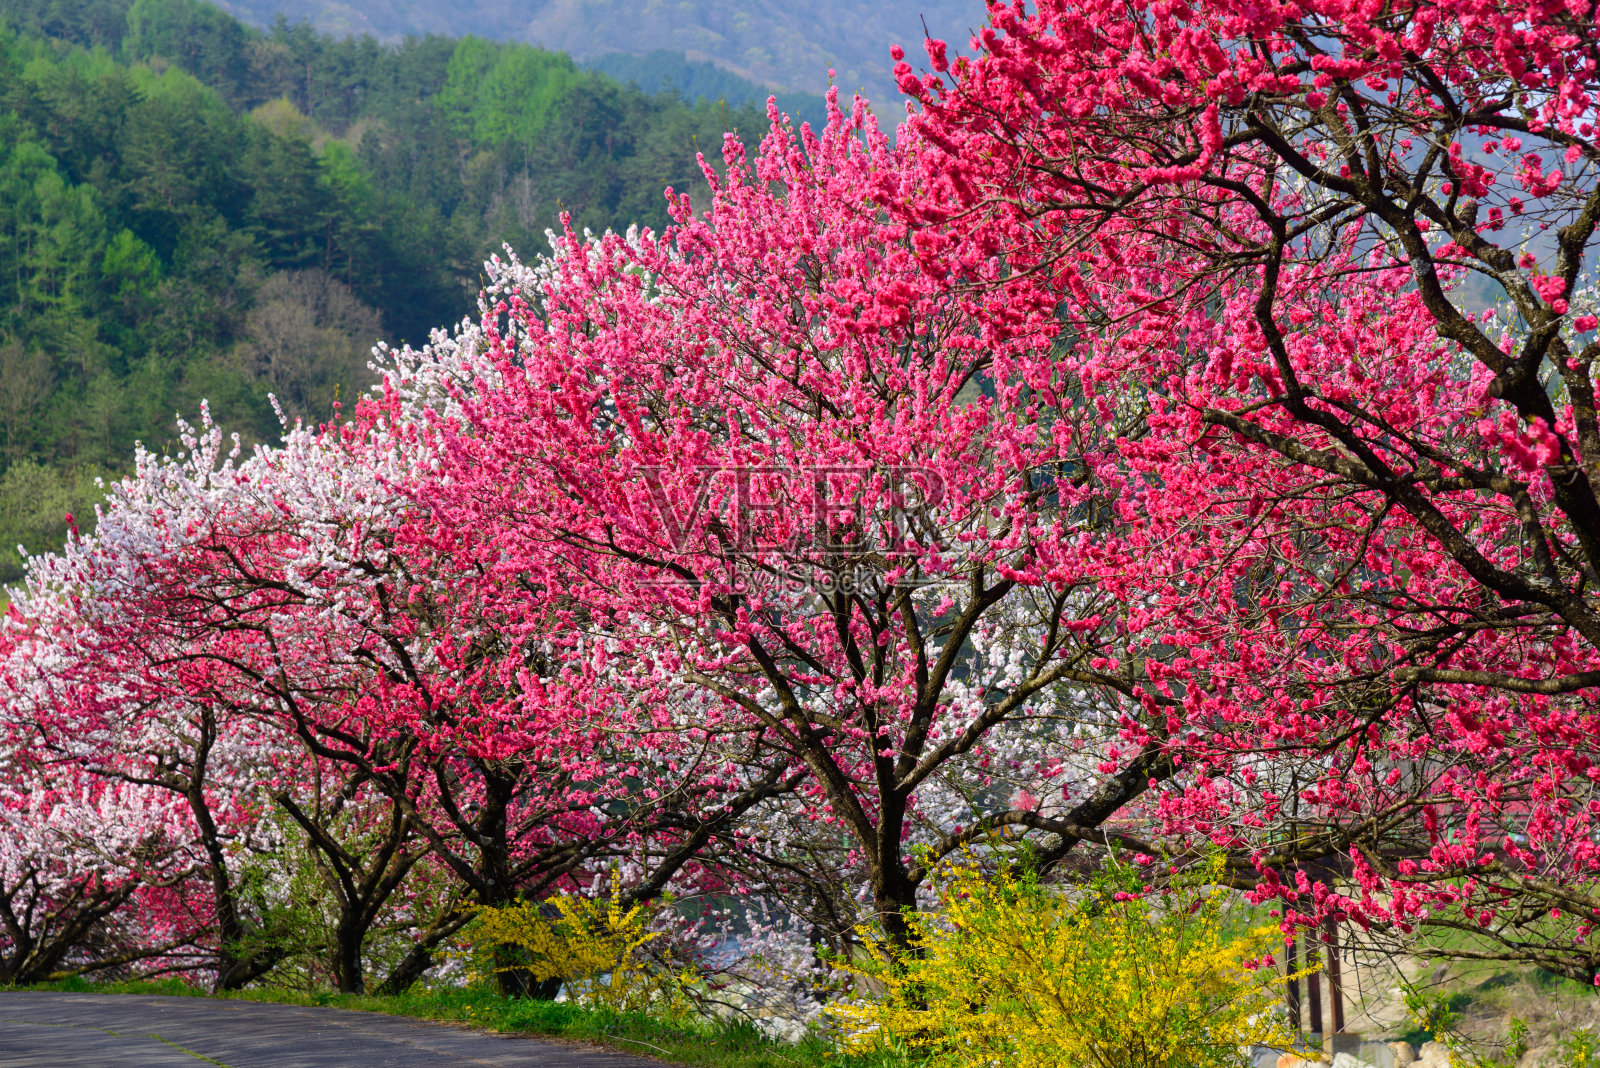 日本长野，池山温泉，桃花盛开照片摄影图片